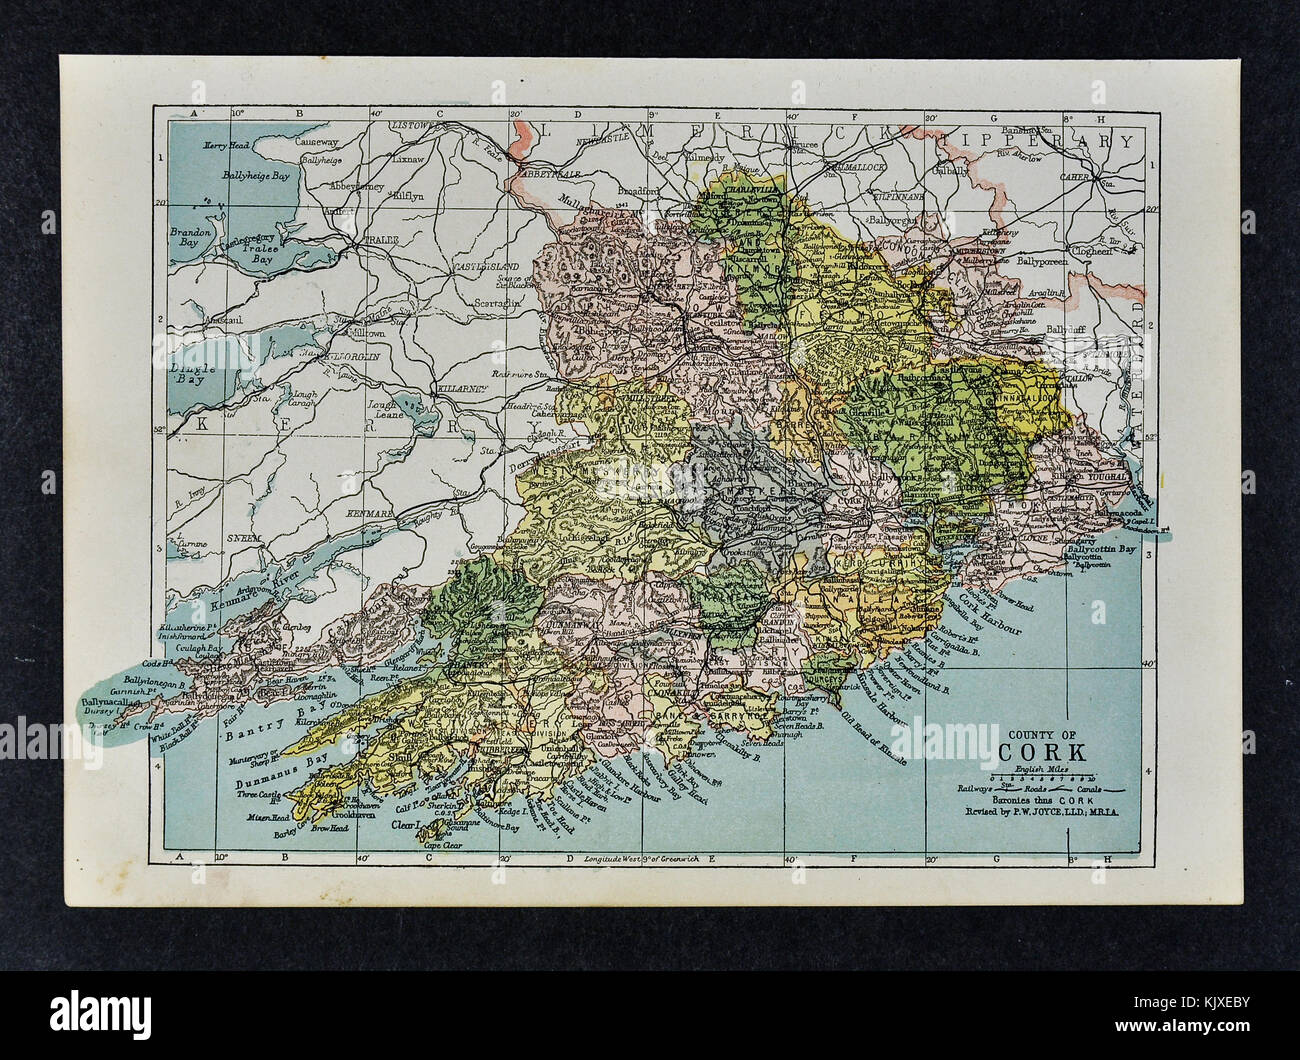 Antica mappa irlanda - contea di Cork - bantry dunmanway youghal cranio skibereen kanturk Foto Stock